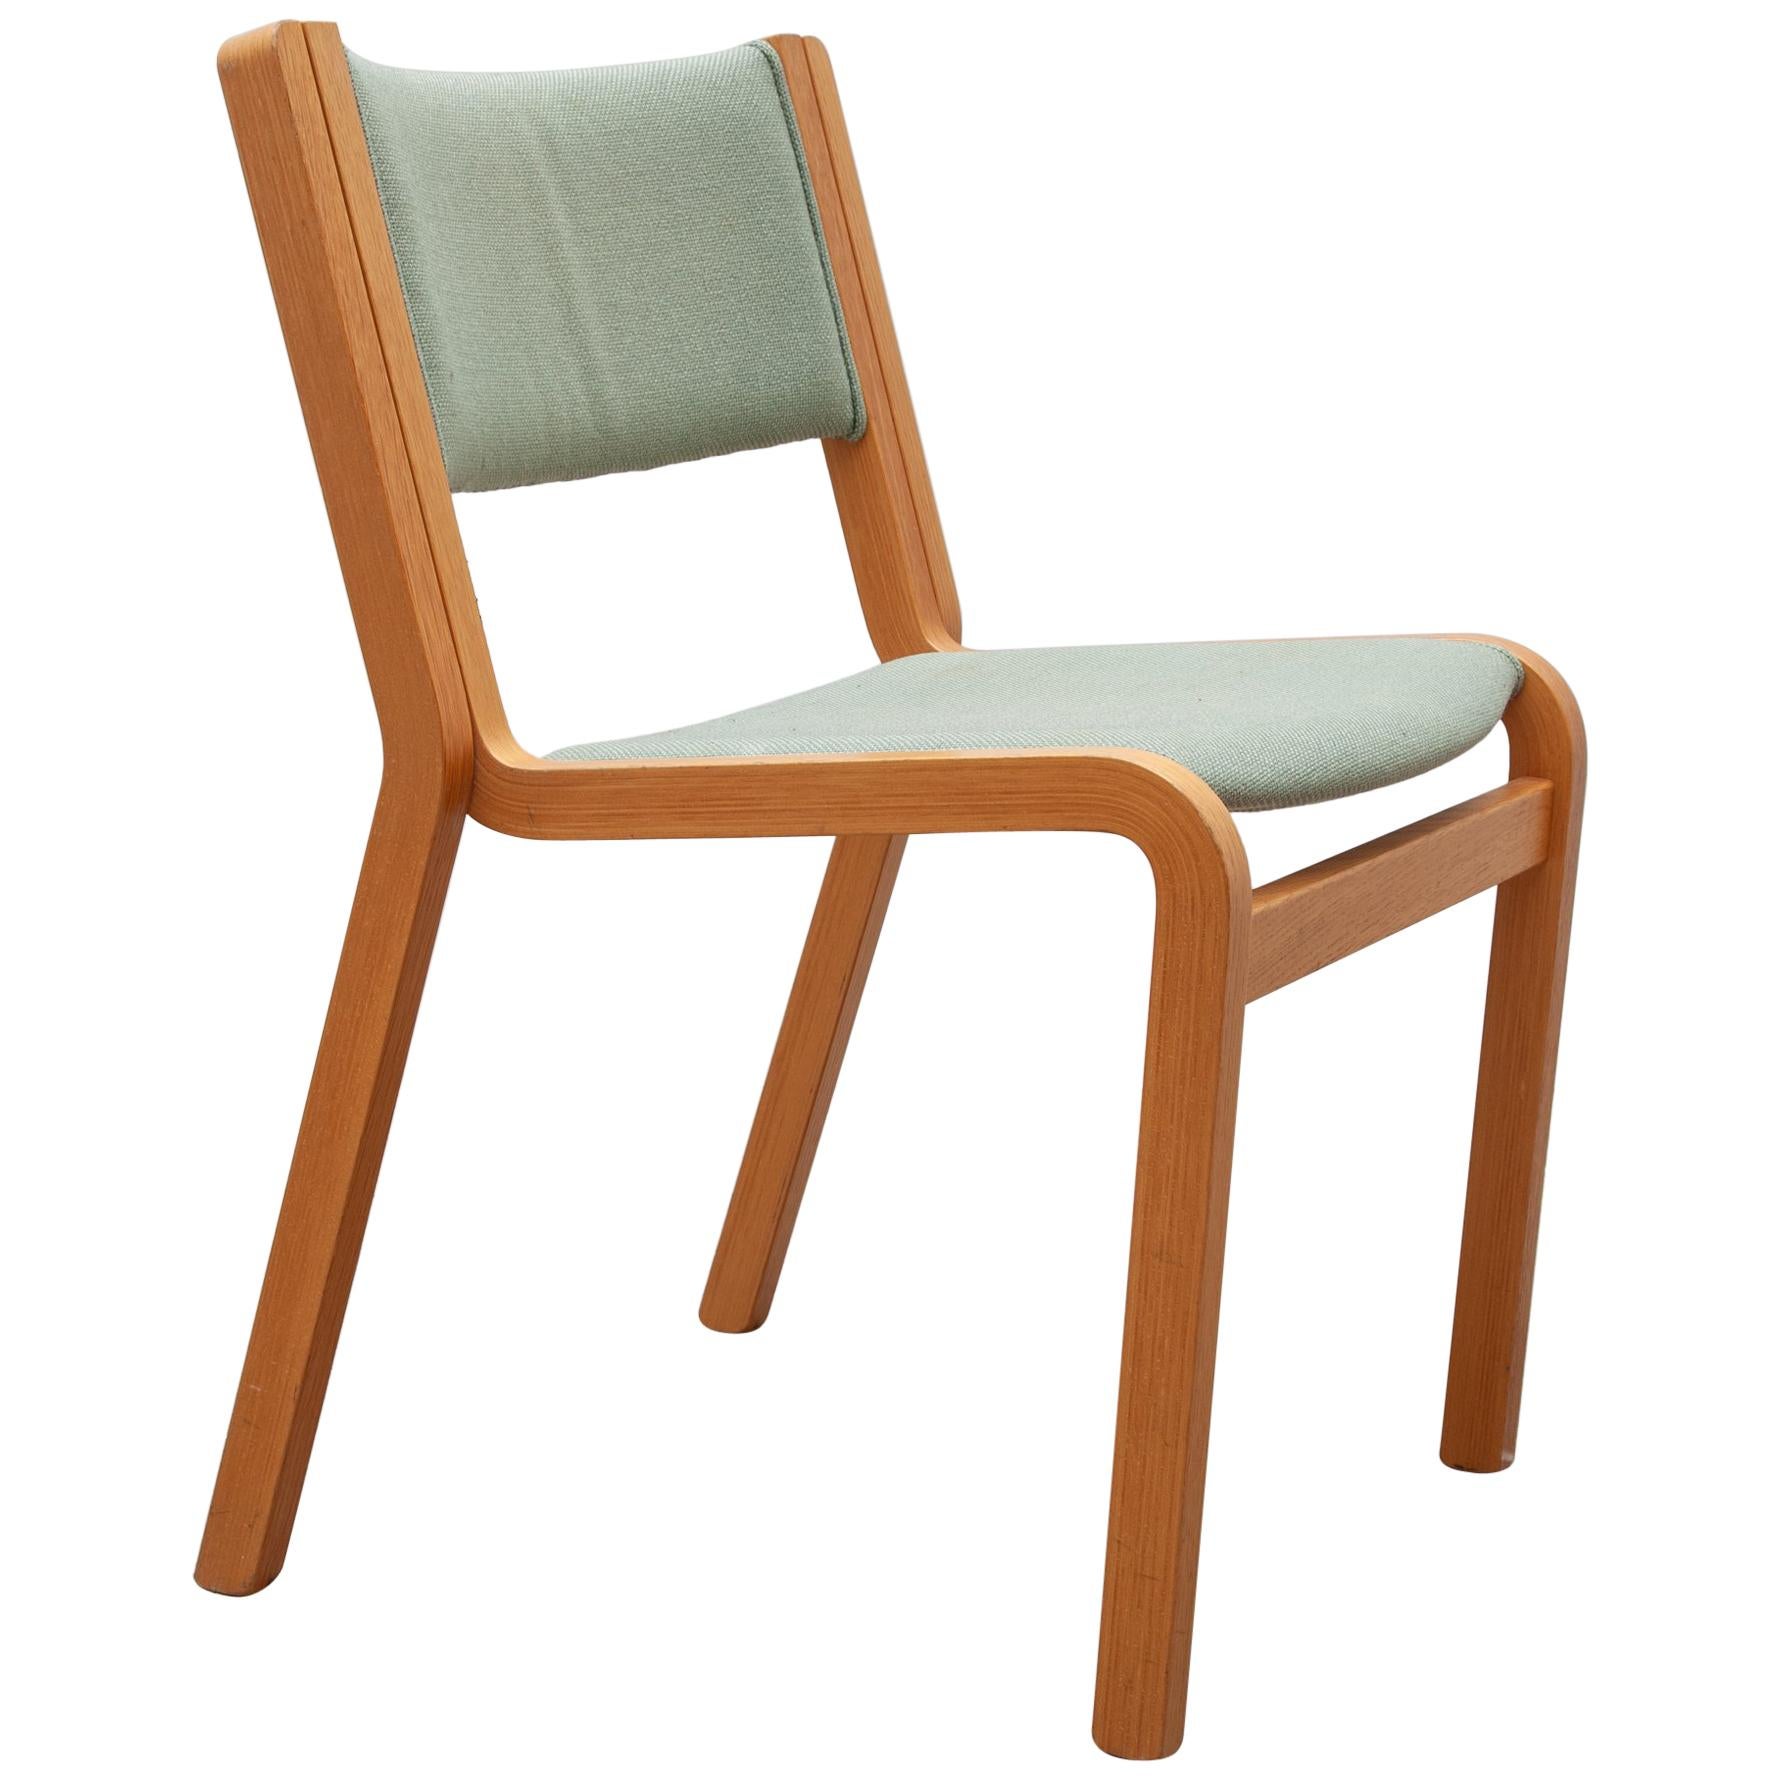 Stühle von Rud Thygesen & Johnny Sorensen für Magnus Olesen, 1970er Jahre, 24 Exemplare